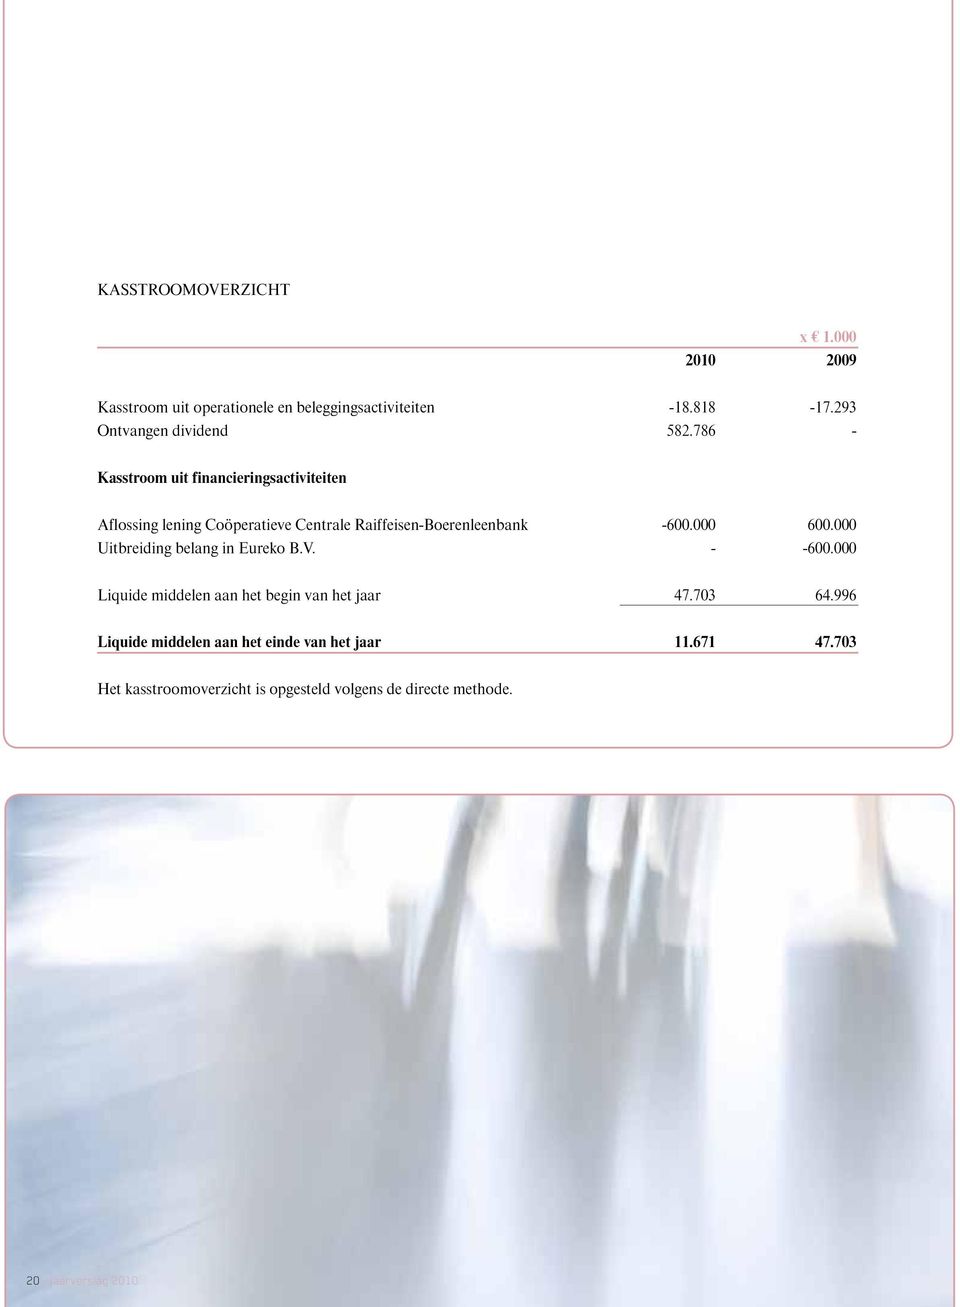 786 - Kasstroom uit financieringsactiviteiten Aflossing lening Coöperatieve Centrale Raiffeisen-Boerenleenbank -600.000 600.